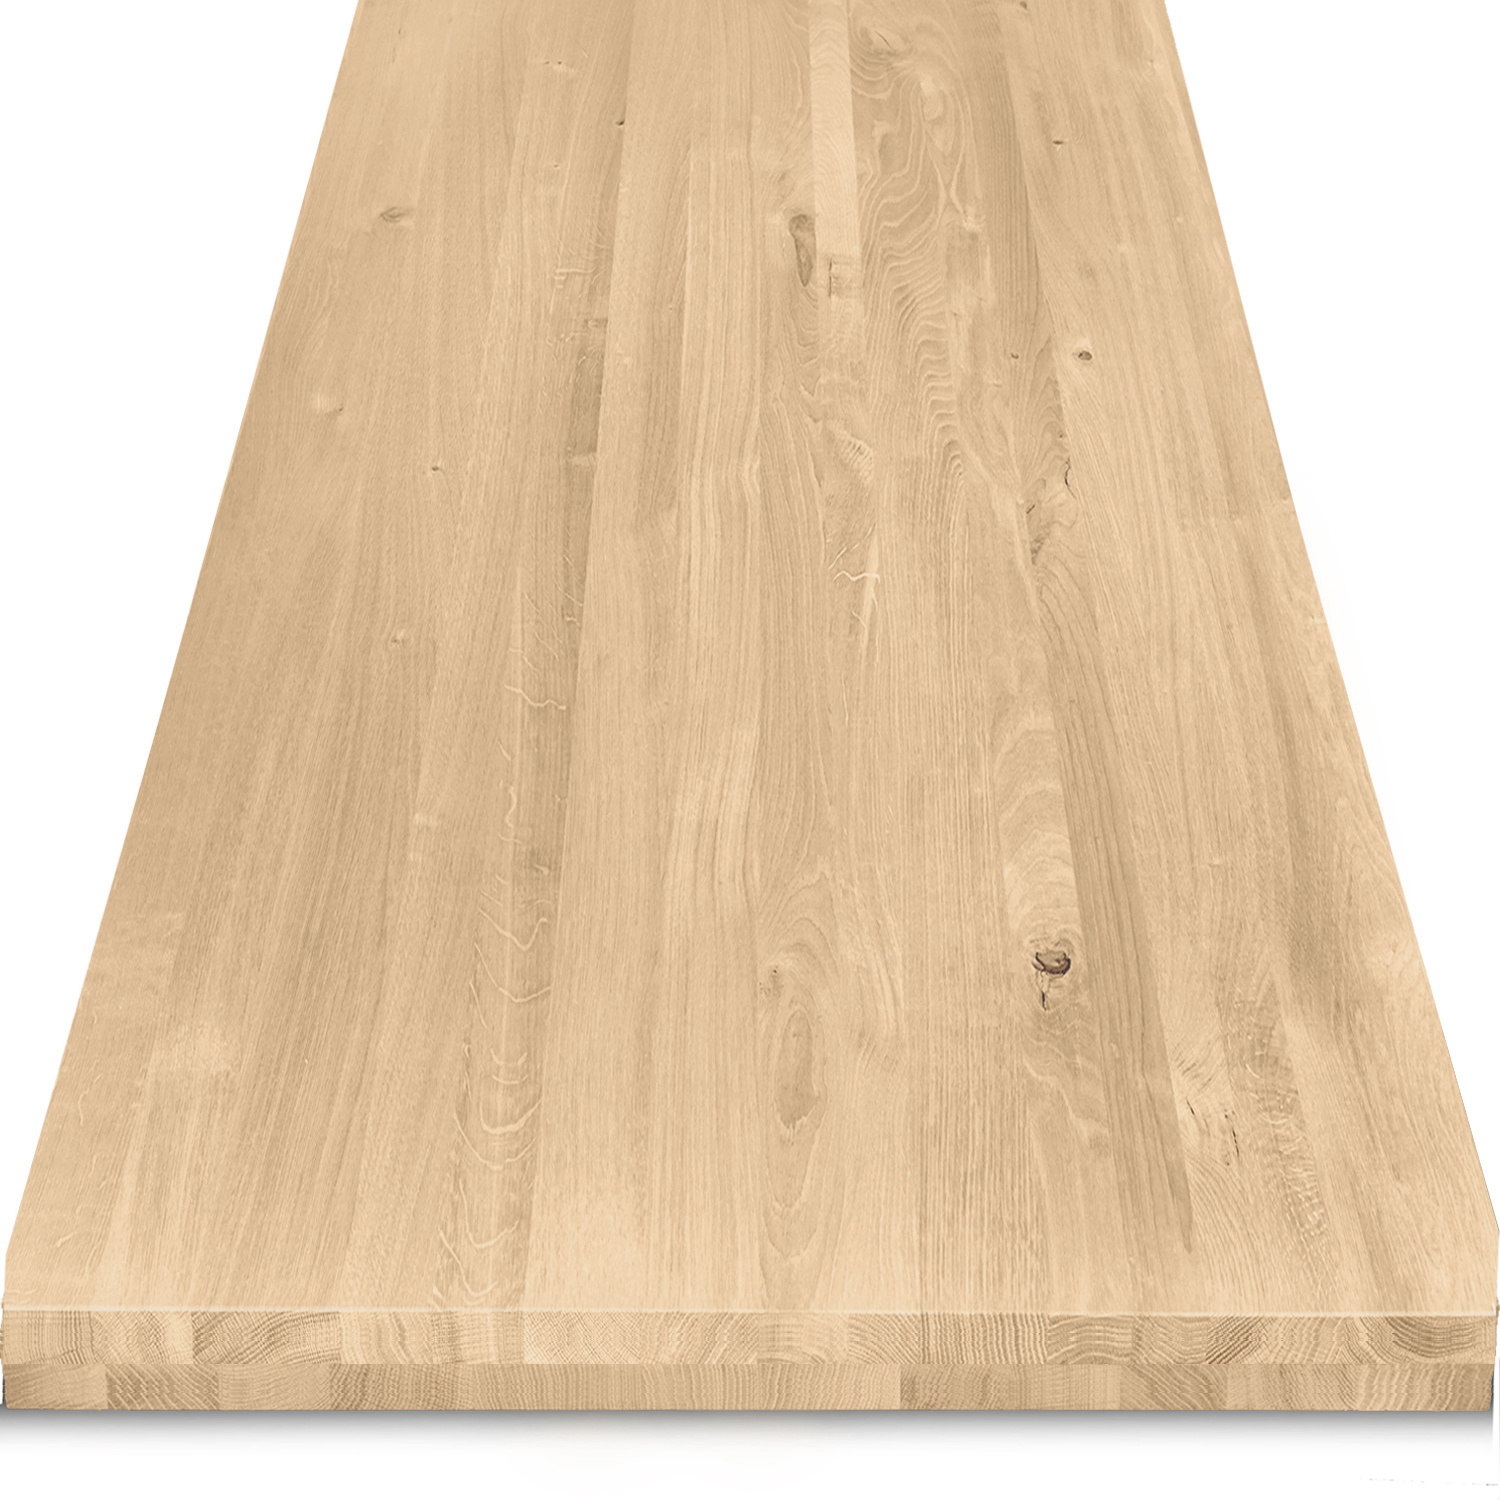  Eiken tafelblad op maat - 6 cm dik (2-laags) - rustiek Europees eikenhout - verlijmd kd 8-12% - 50-120x50-350 cm